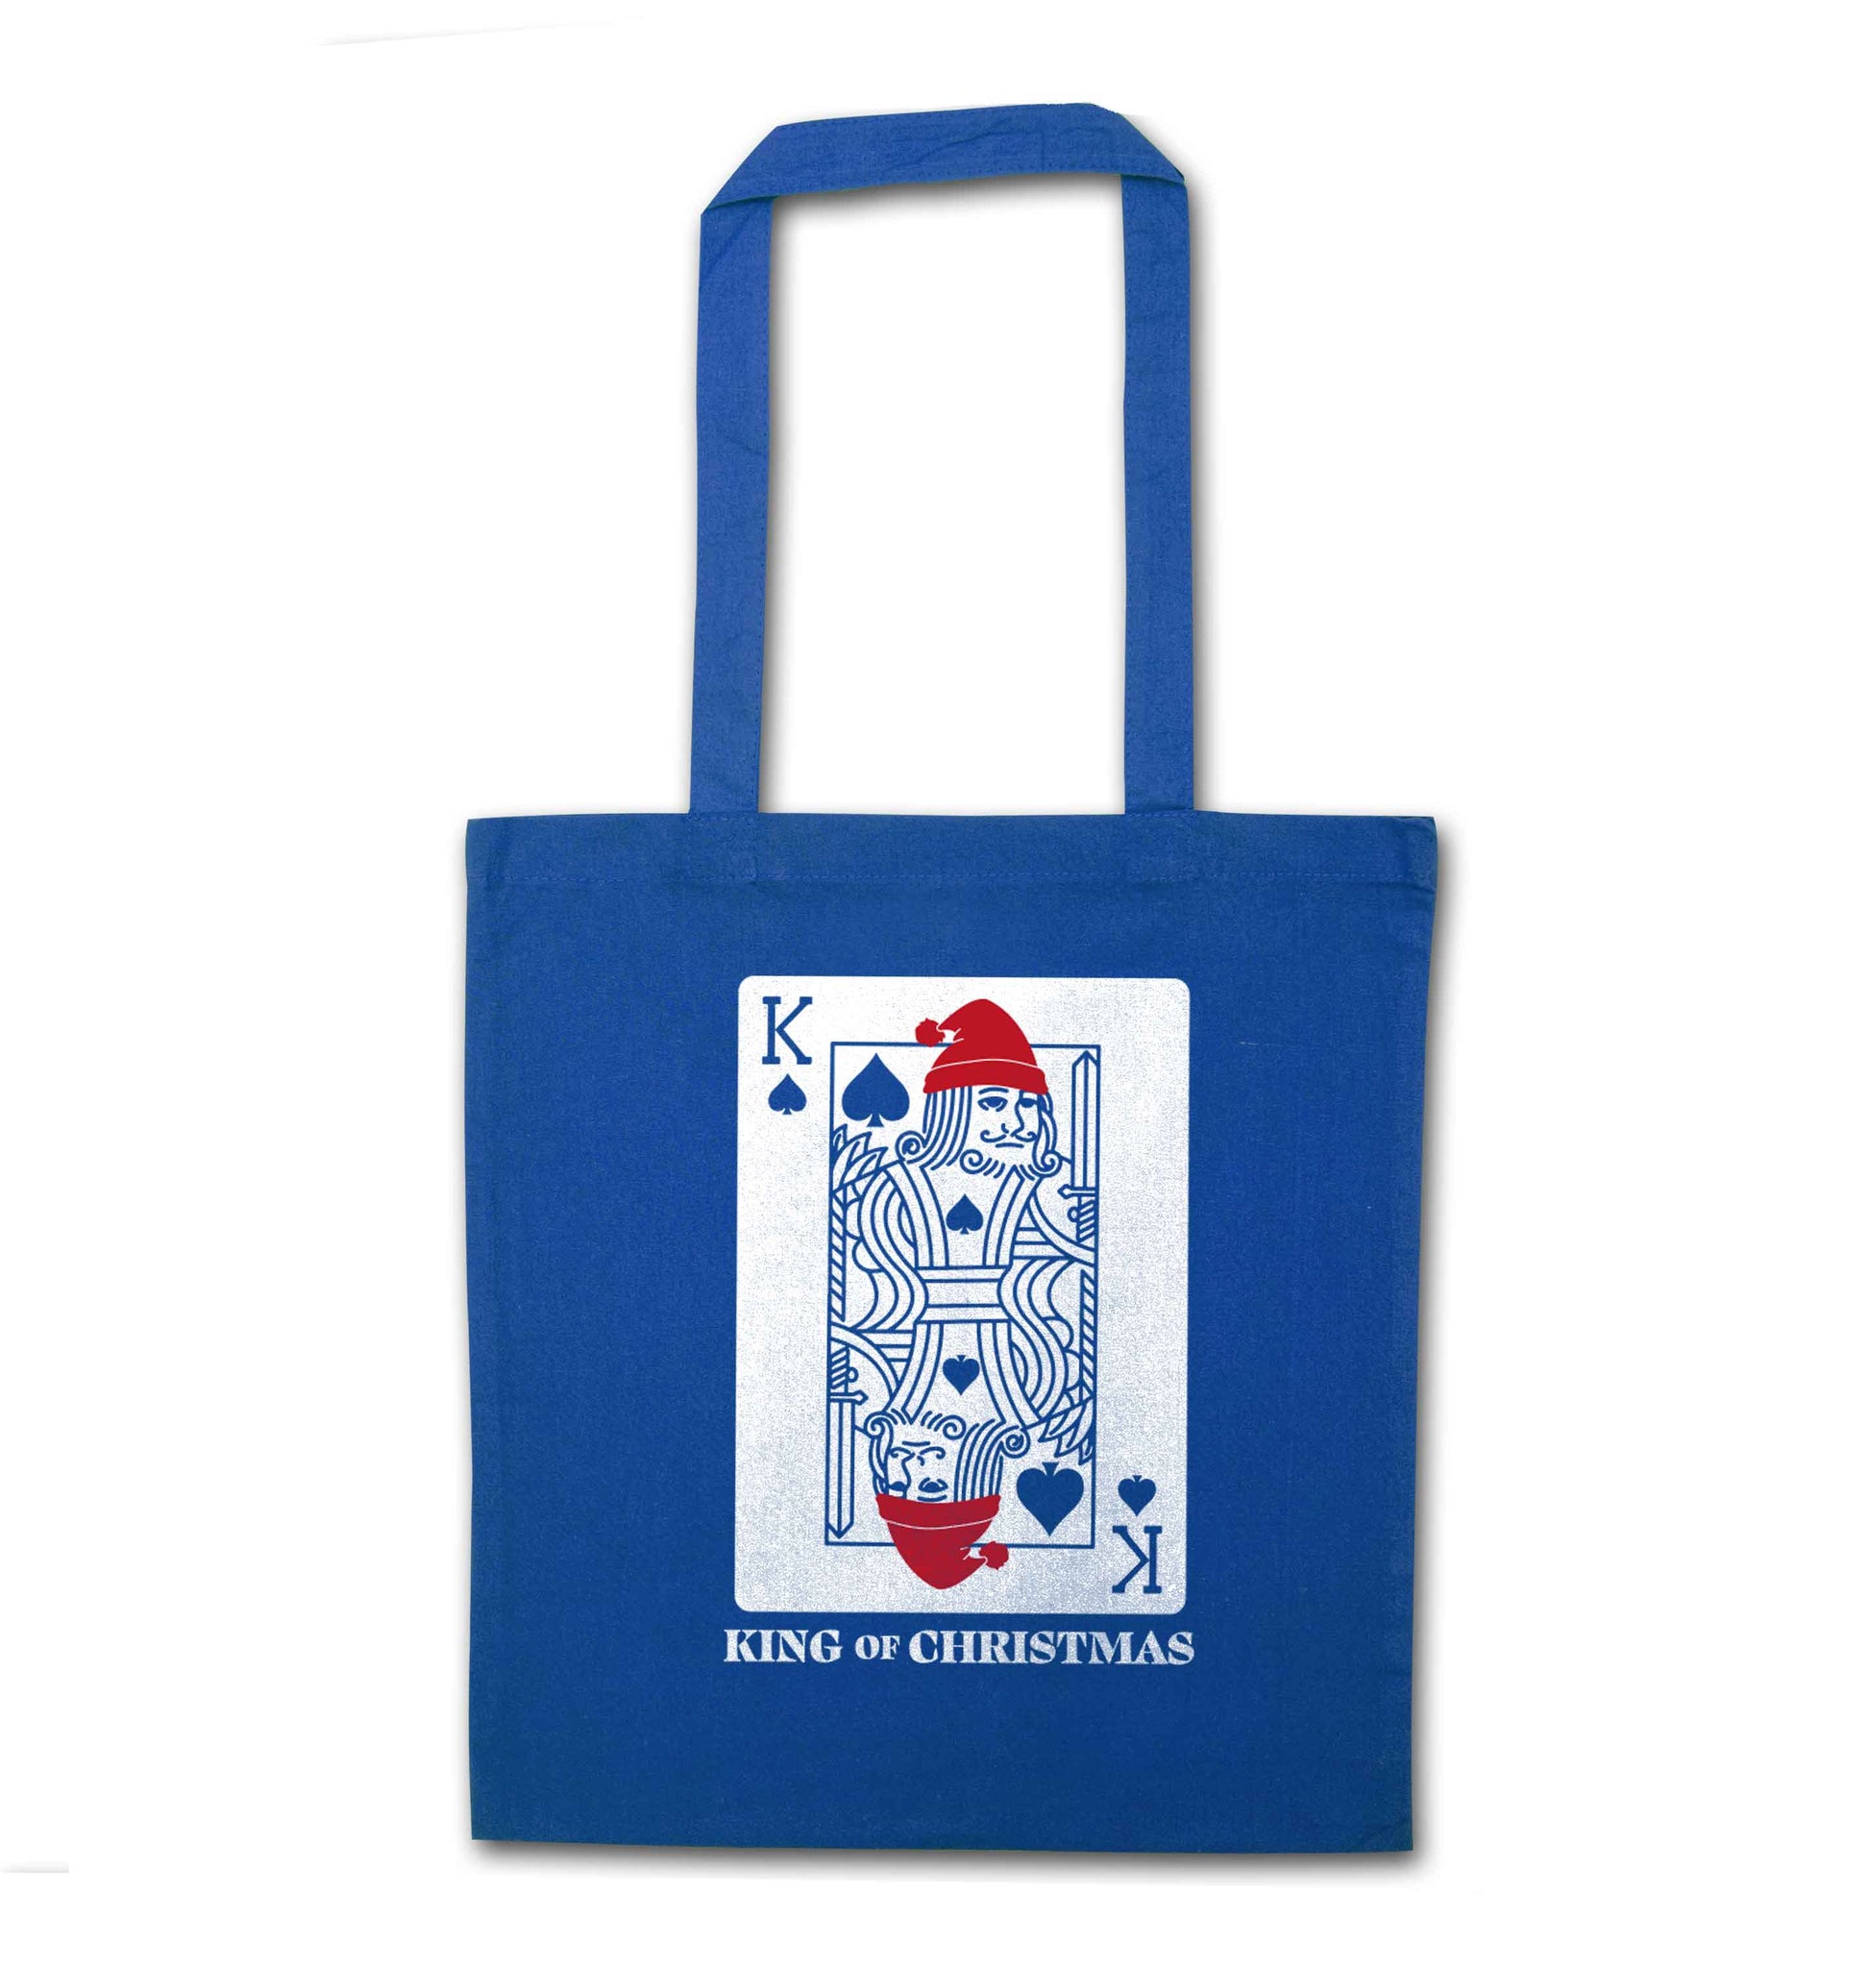 King of christmas blue tote bag